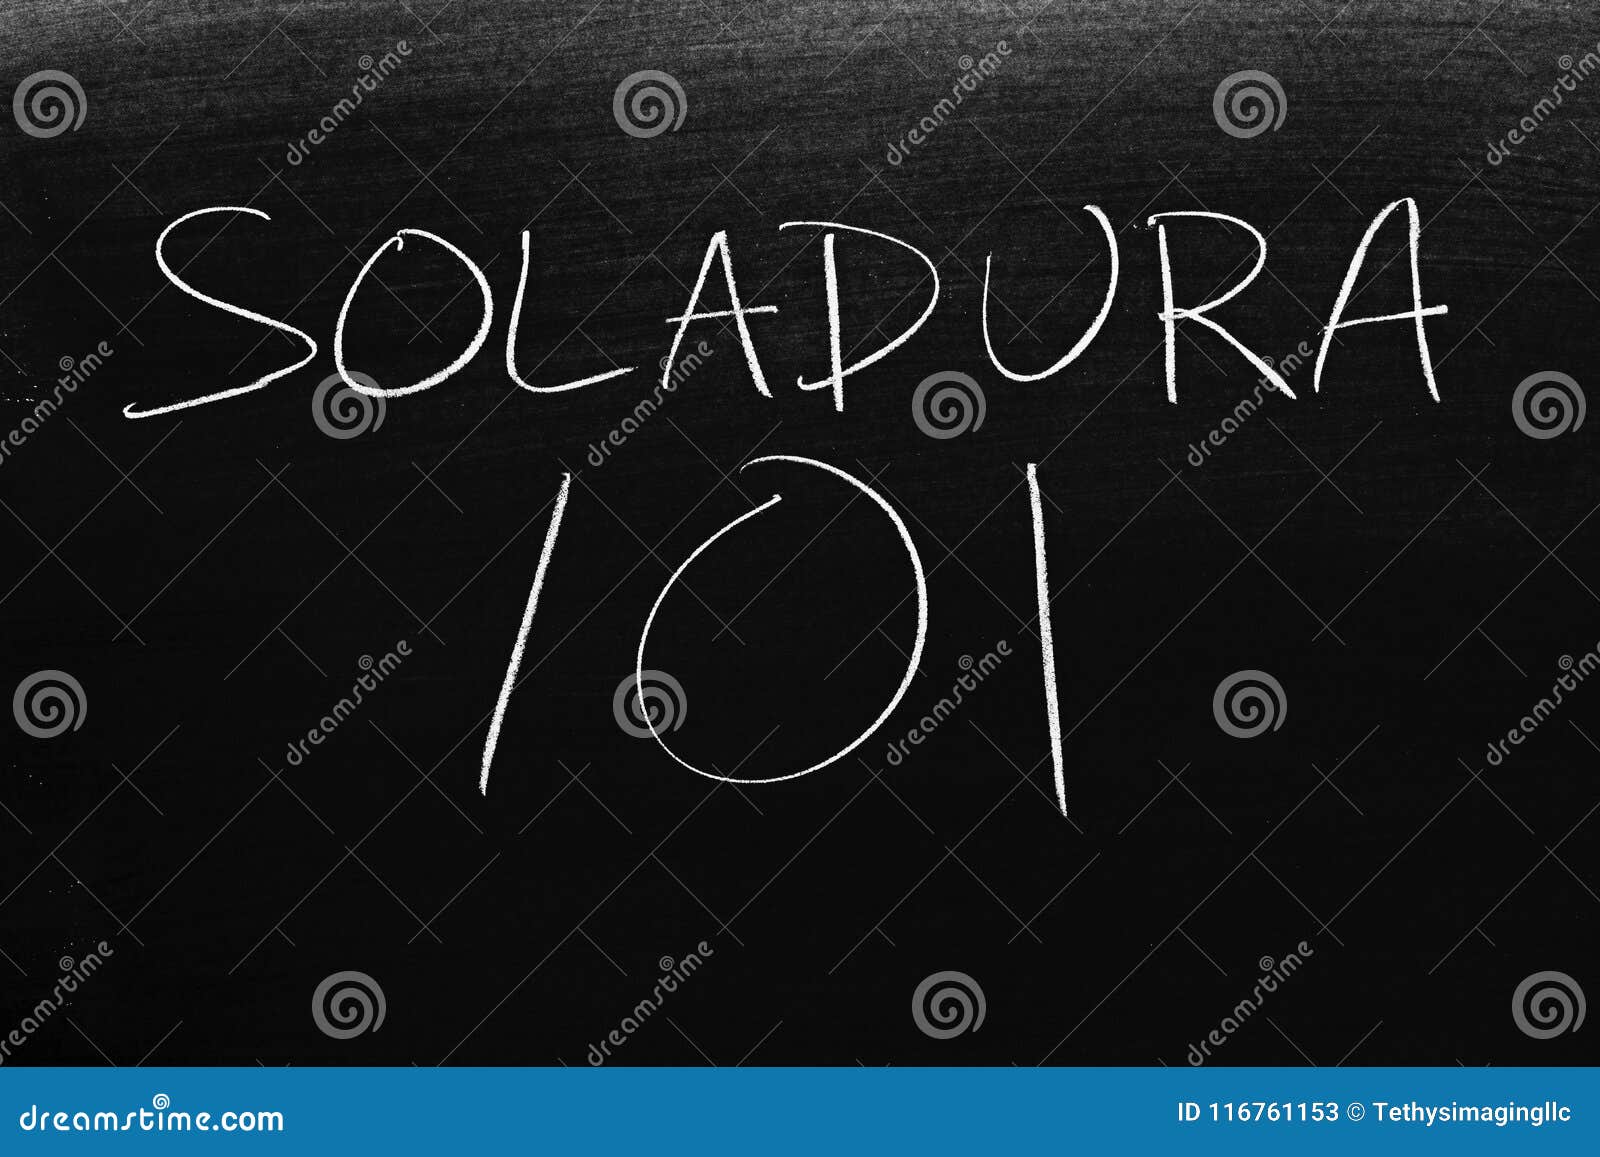 soldadura 101 on a blackboard. translation: welding 101